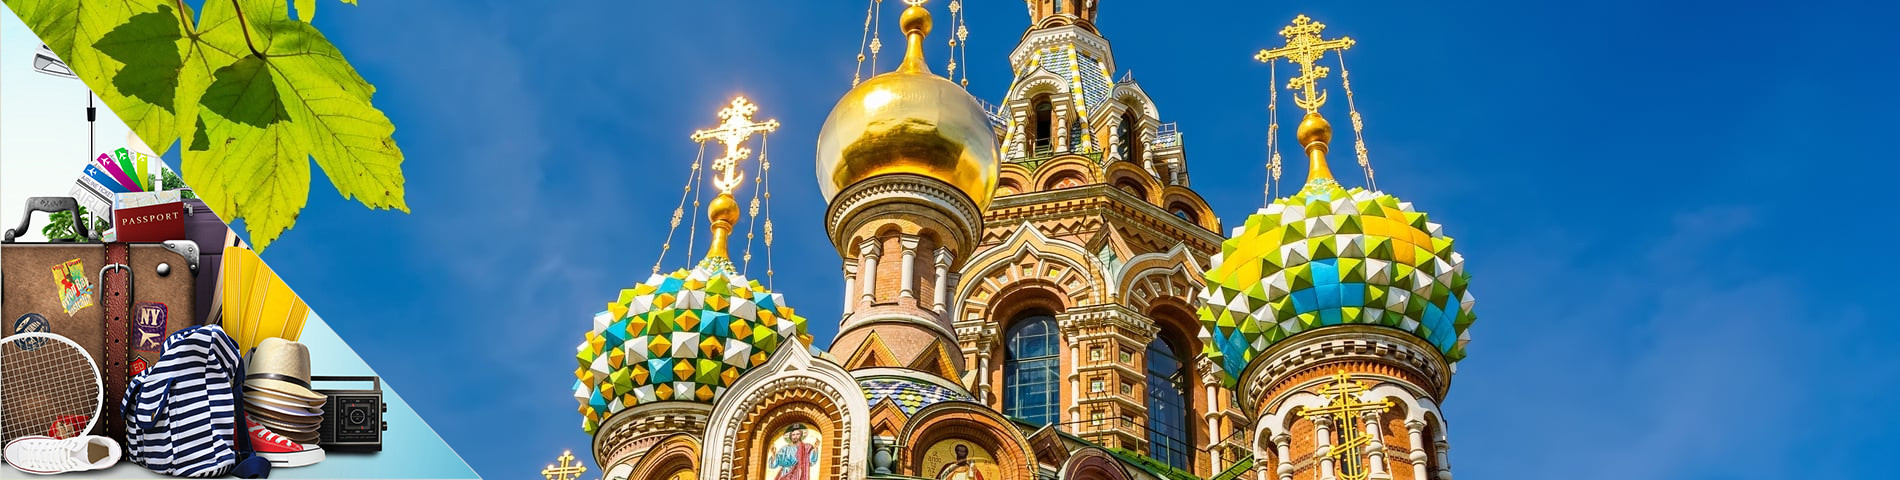 San Pietroburgo - Russo per il Turismo